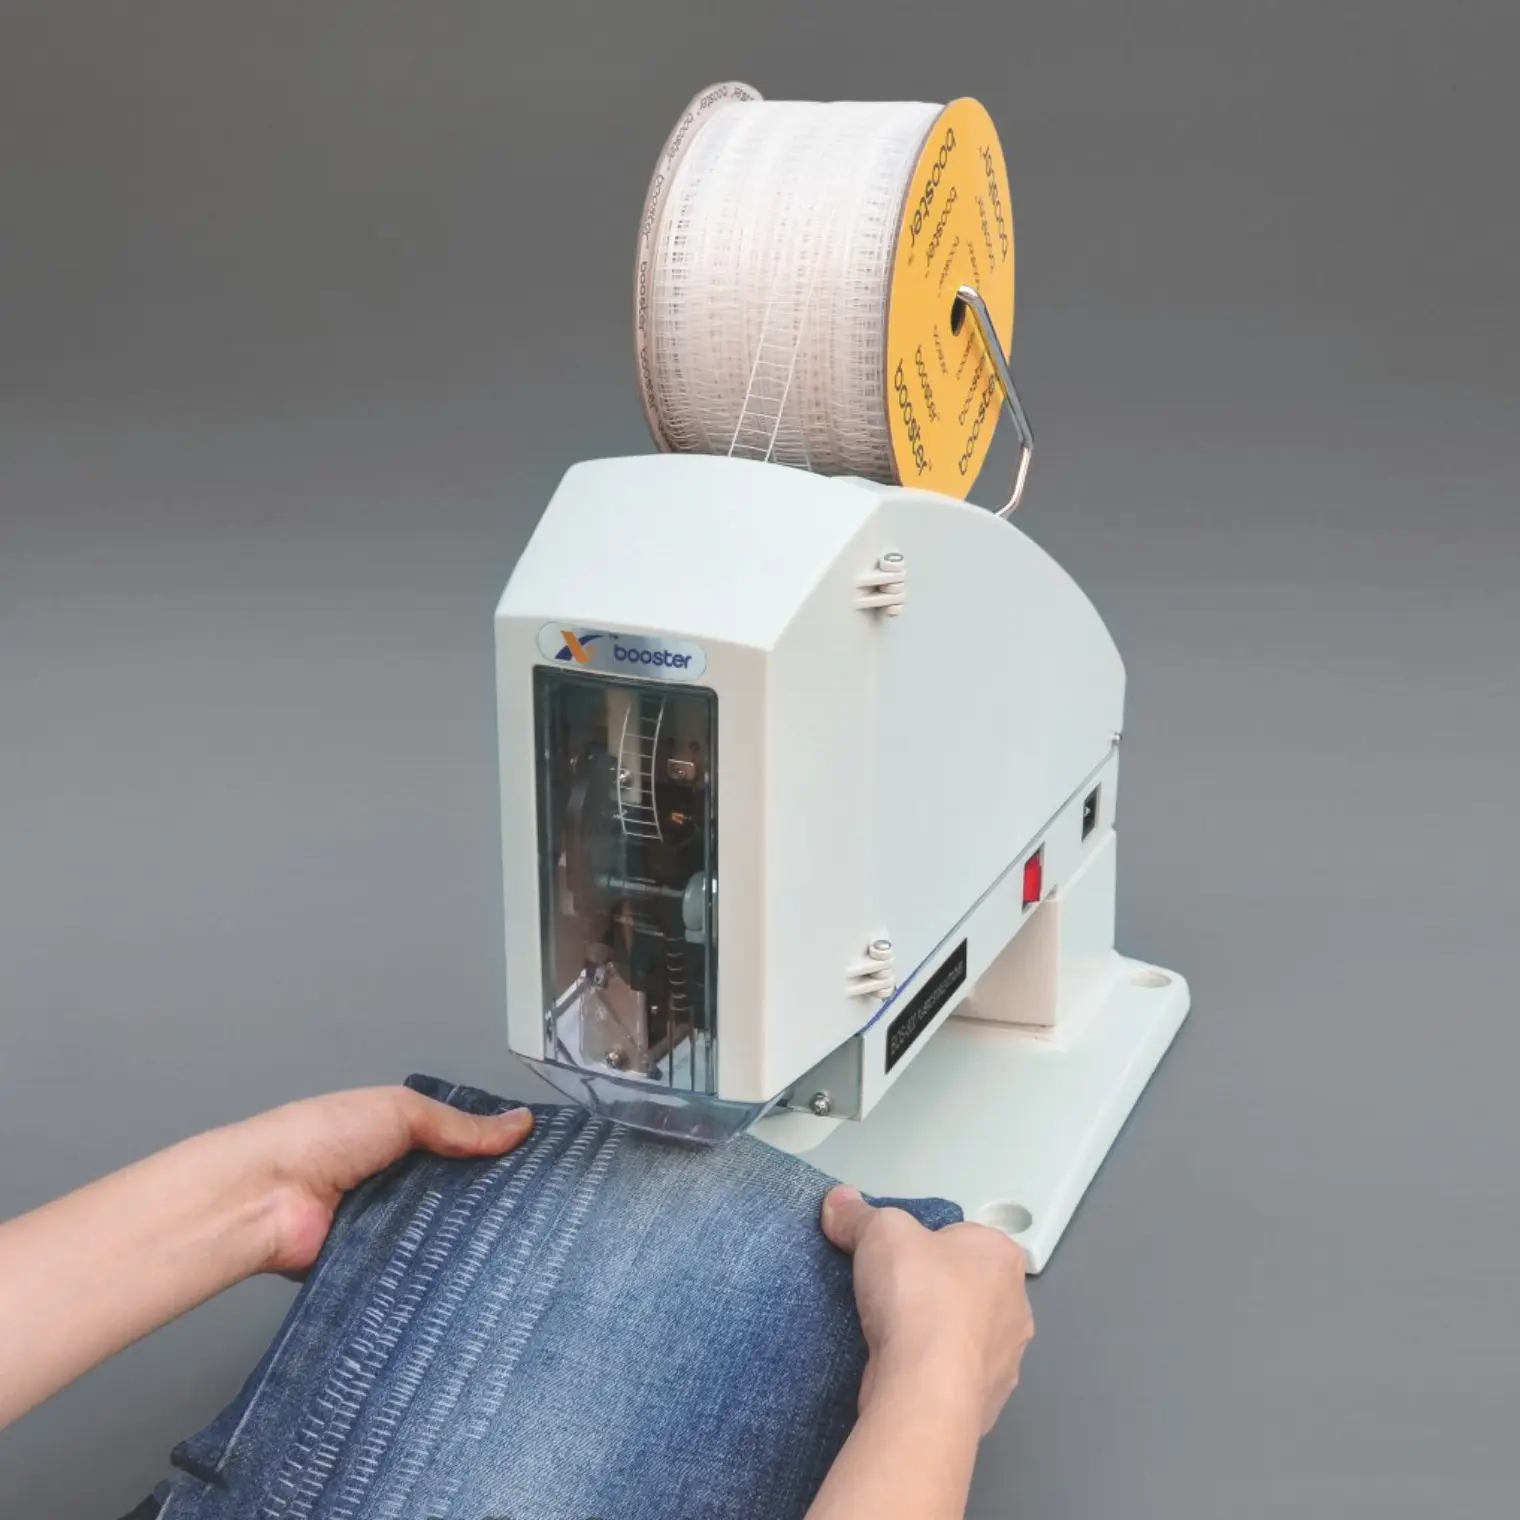 Booster OEM plastik zımba makinesi için yüksek kalite otomatik st9000 plastik zımba cher cher giysi havlu çorap kot sabit etiket